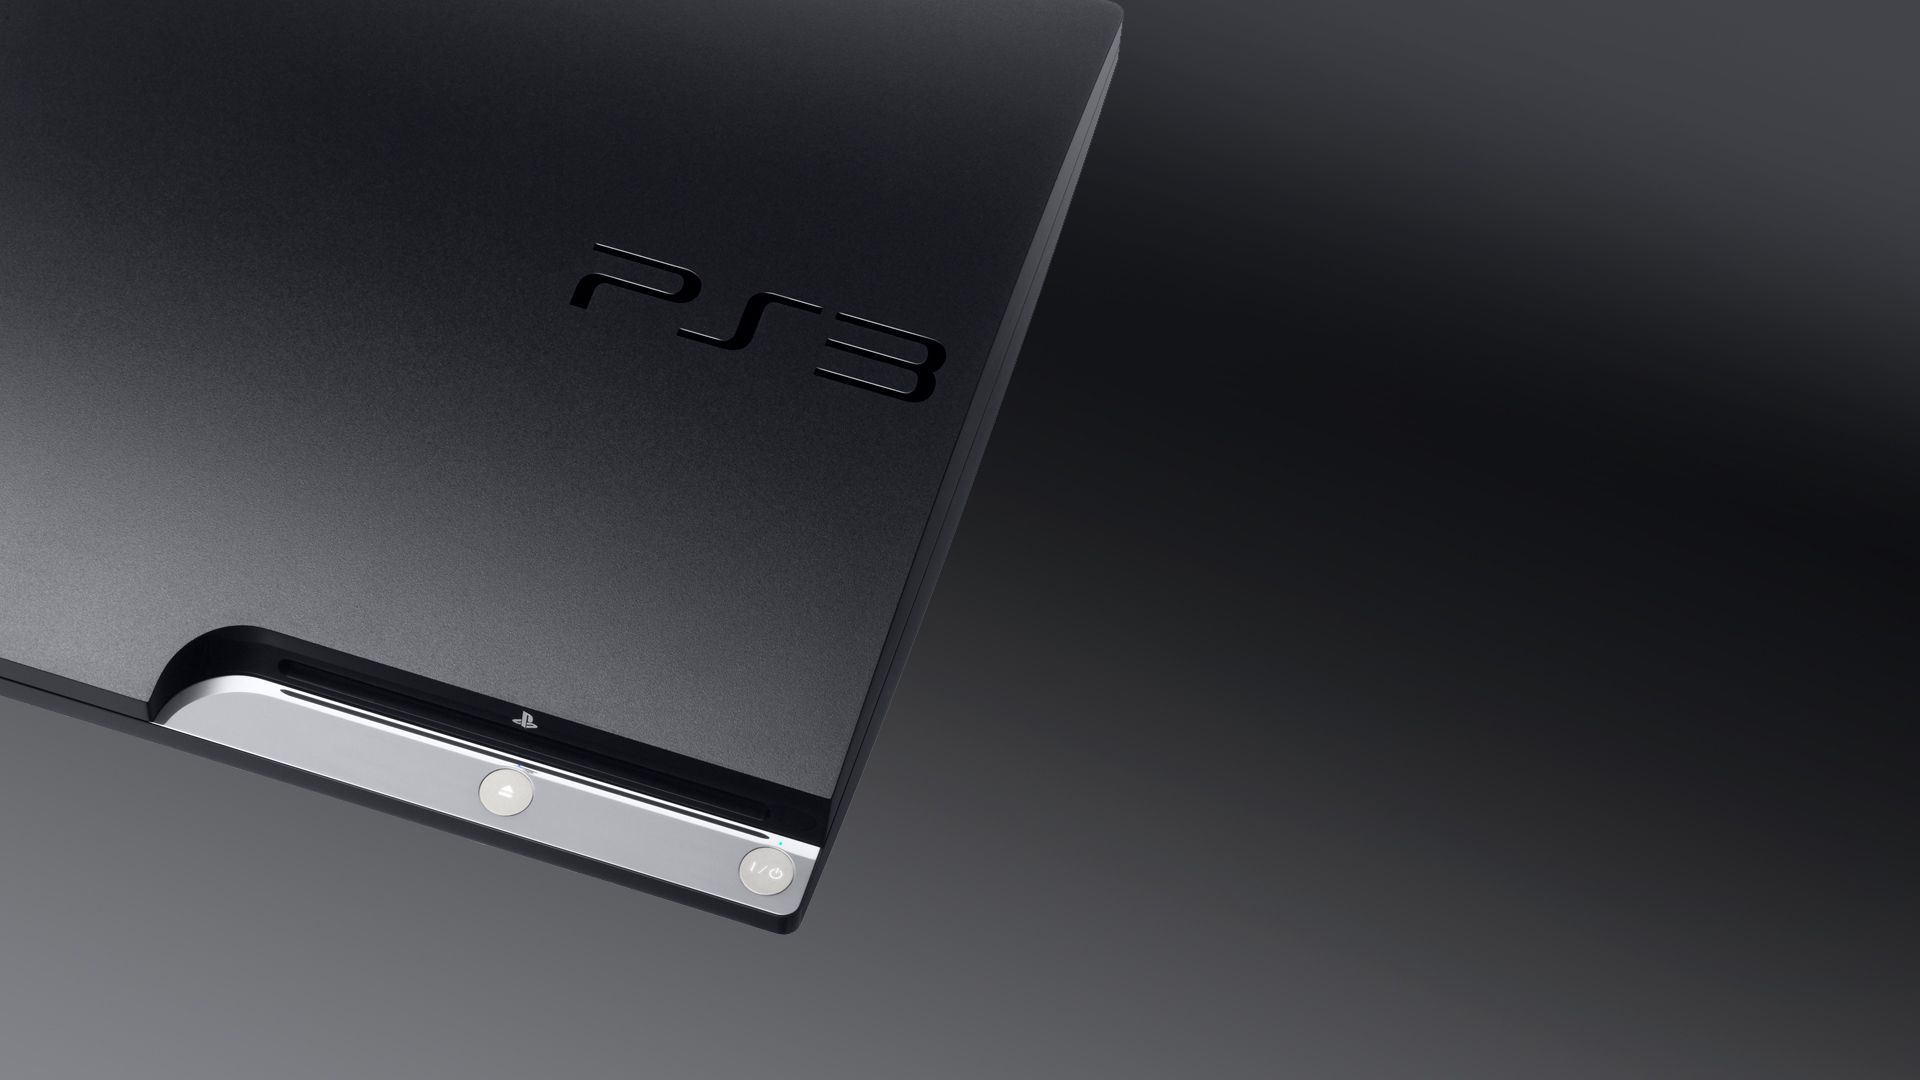 Presque 15 ans après sa sortie, la PS3 reçoit une nouvelle mise à jour